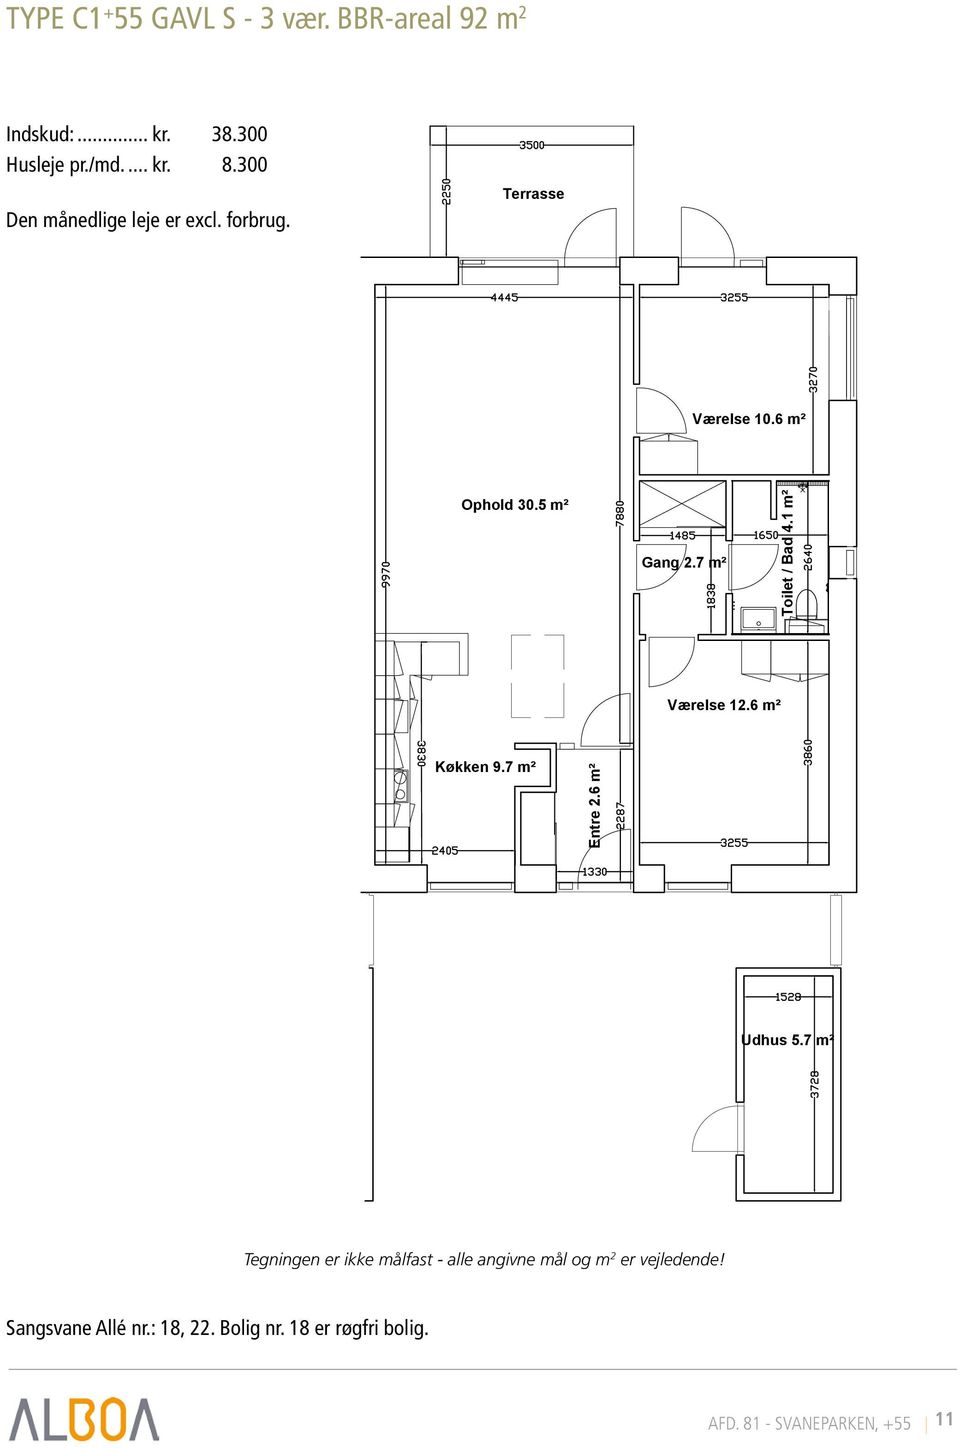 7 m² Toilet / Bad 4.1 m² Værelse 12.6 m² Køkken 9.7 m² Entre 2.6 m² Udhus 5.